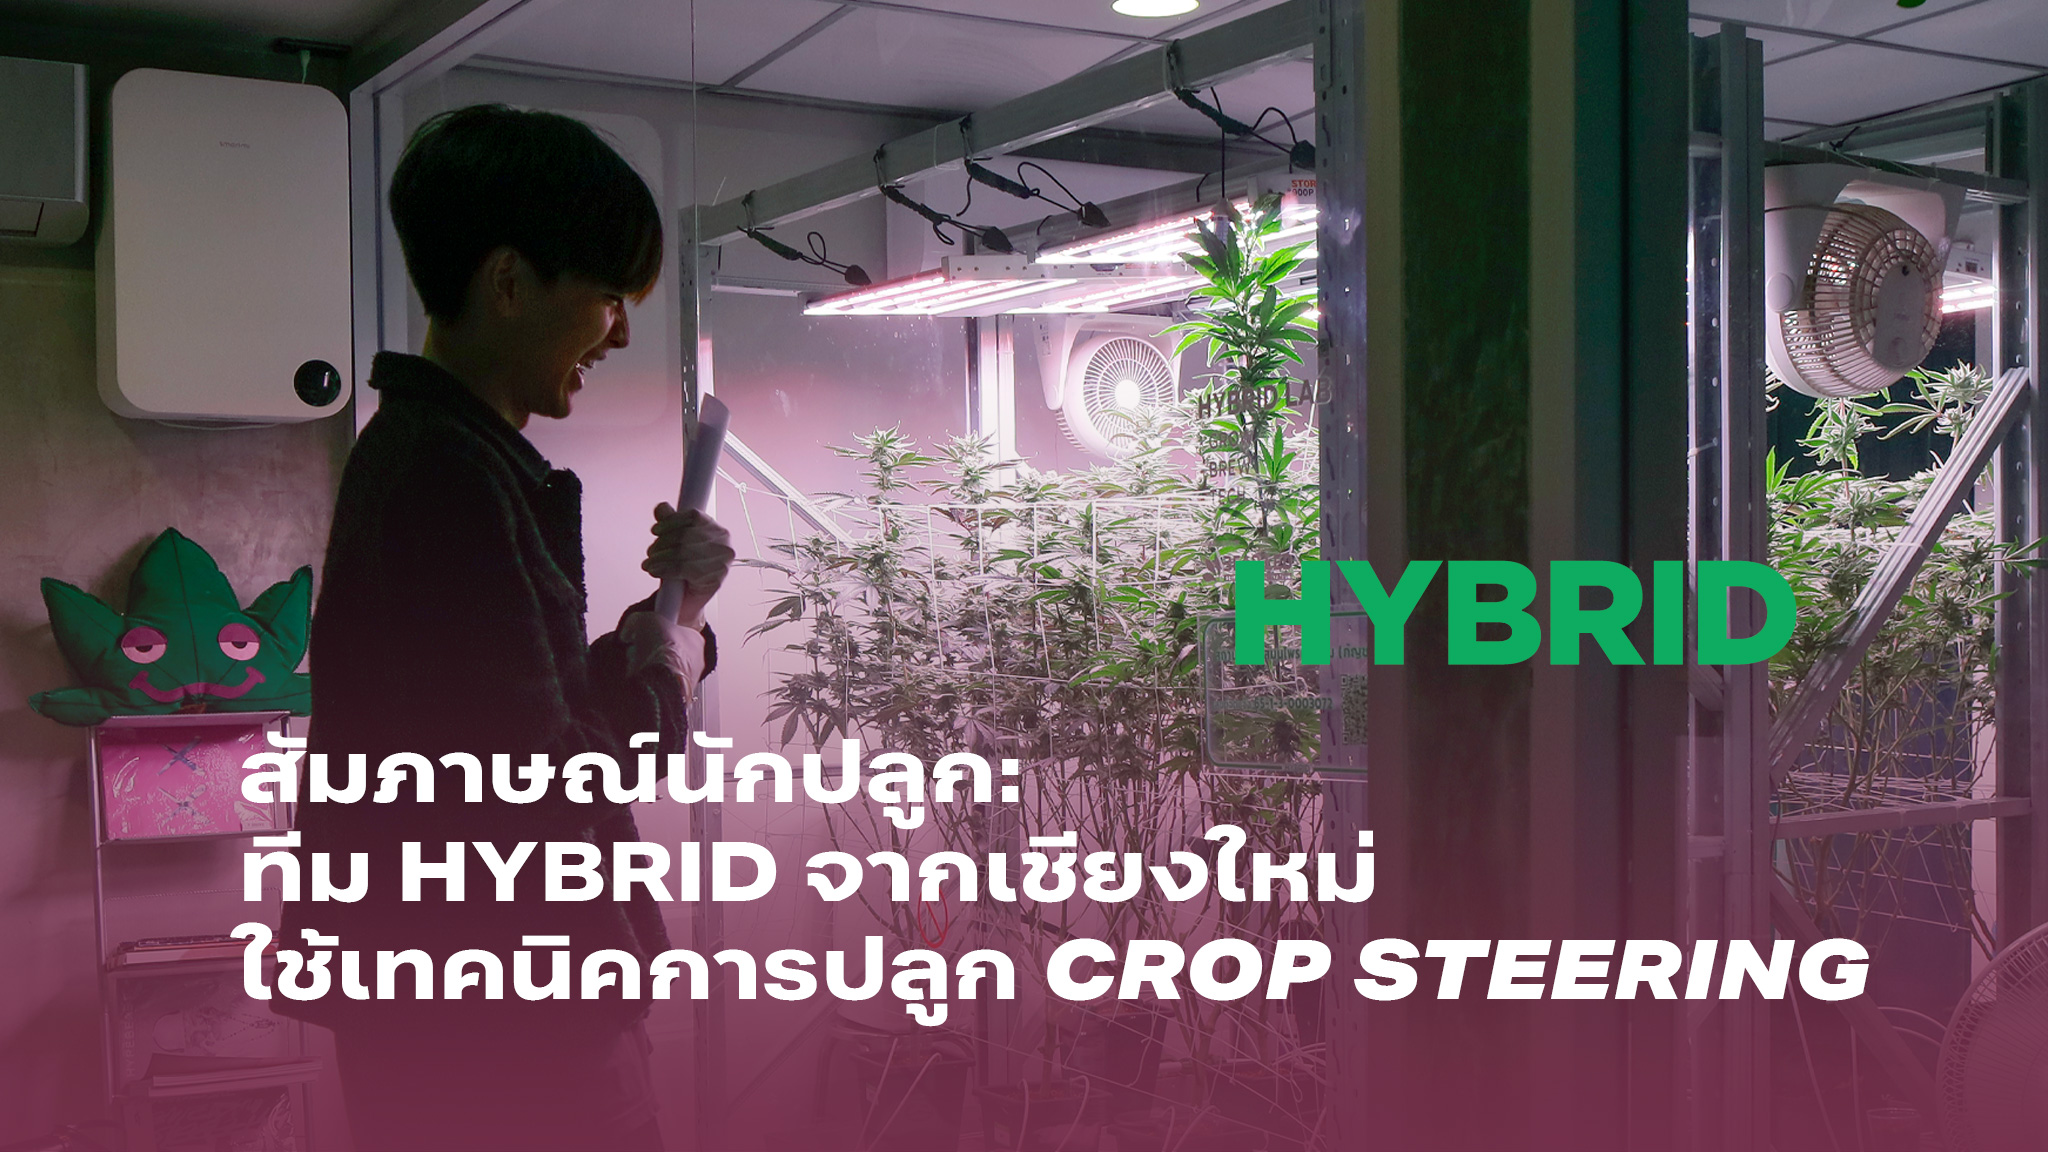 สัมภาษณ์นักปลูก ทีม HYBRID จากเชียงใหม่ใช้เทคนิคการปลูกแบบควบคุมการเจริญเติบโตของพืช Crop Steering